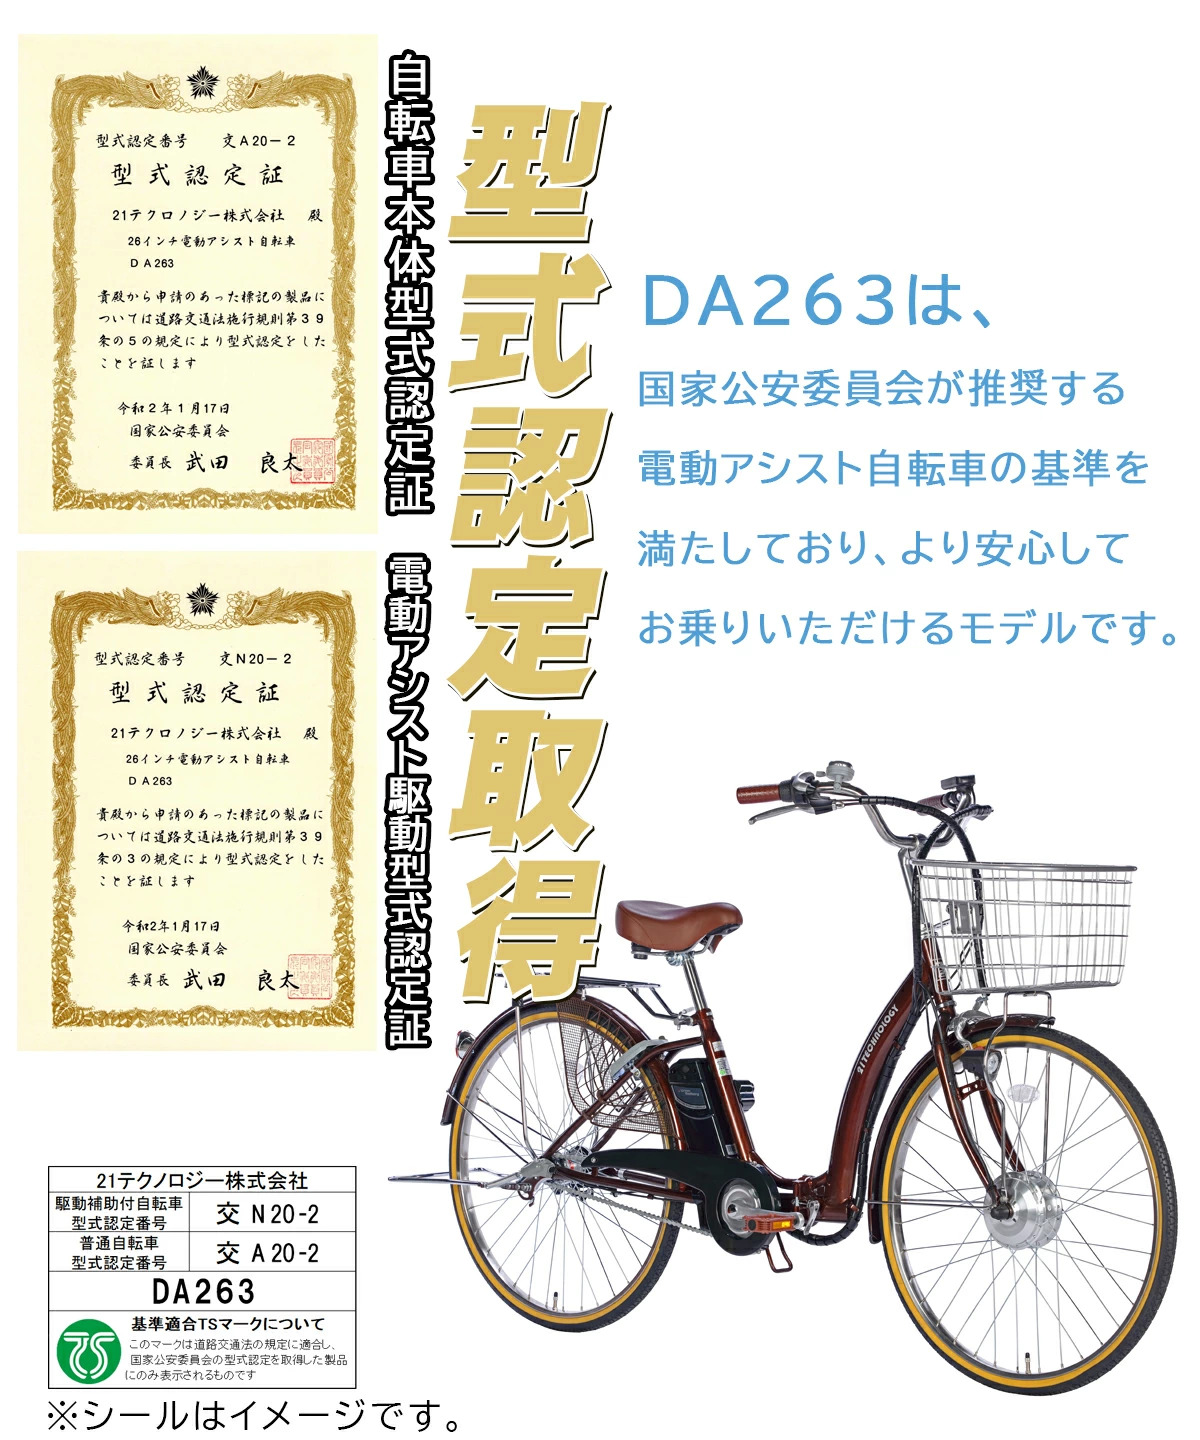 26インチ電動アシスト自転車 DA263 型式認定取得